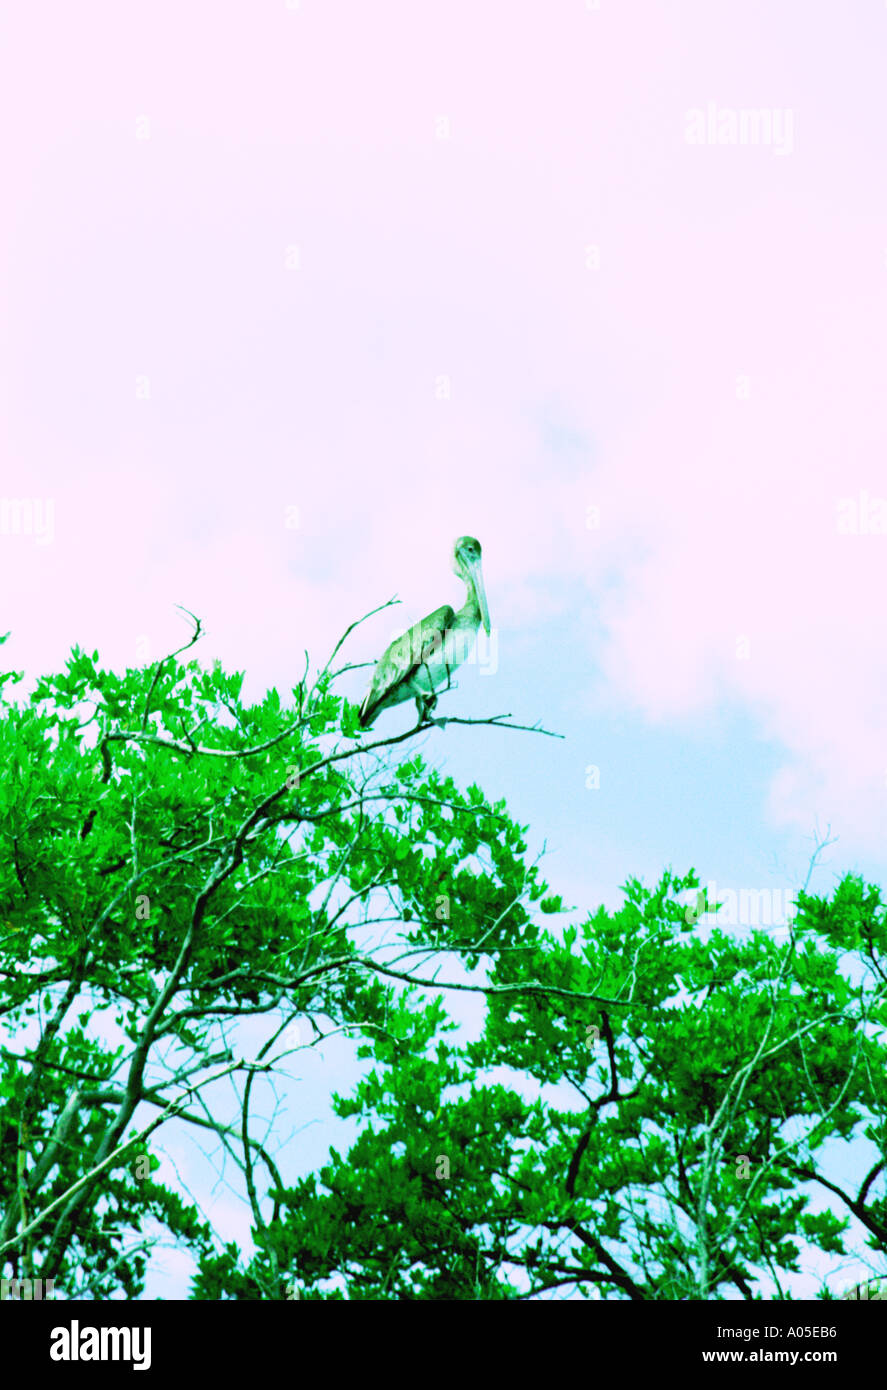 Stork on tree in lagoon Margarita Island 284 Stock Photo